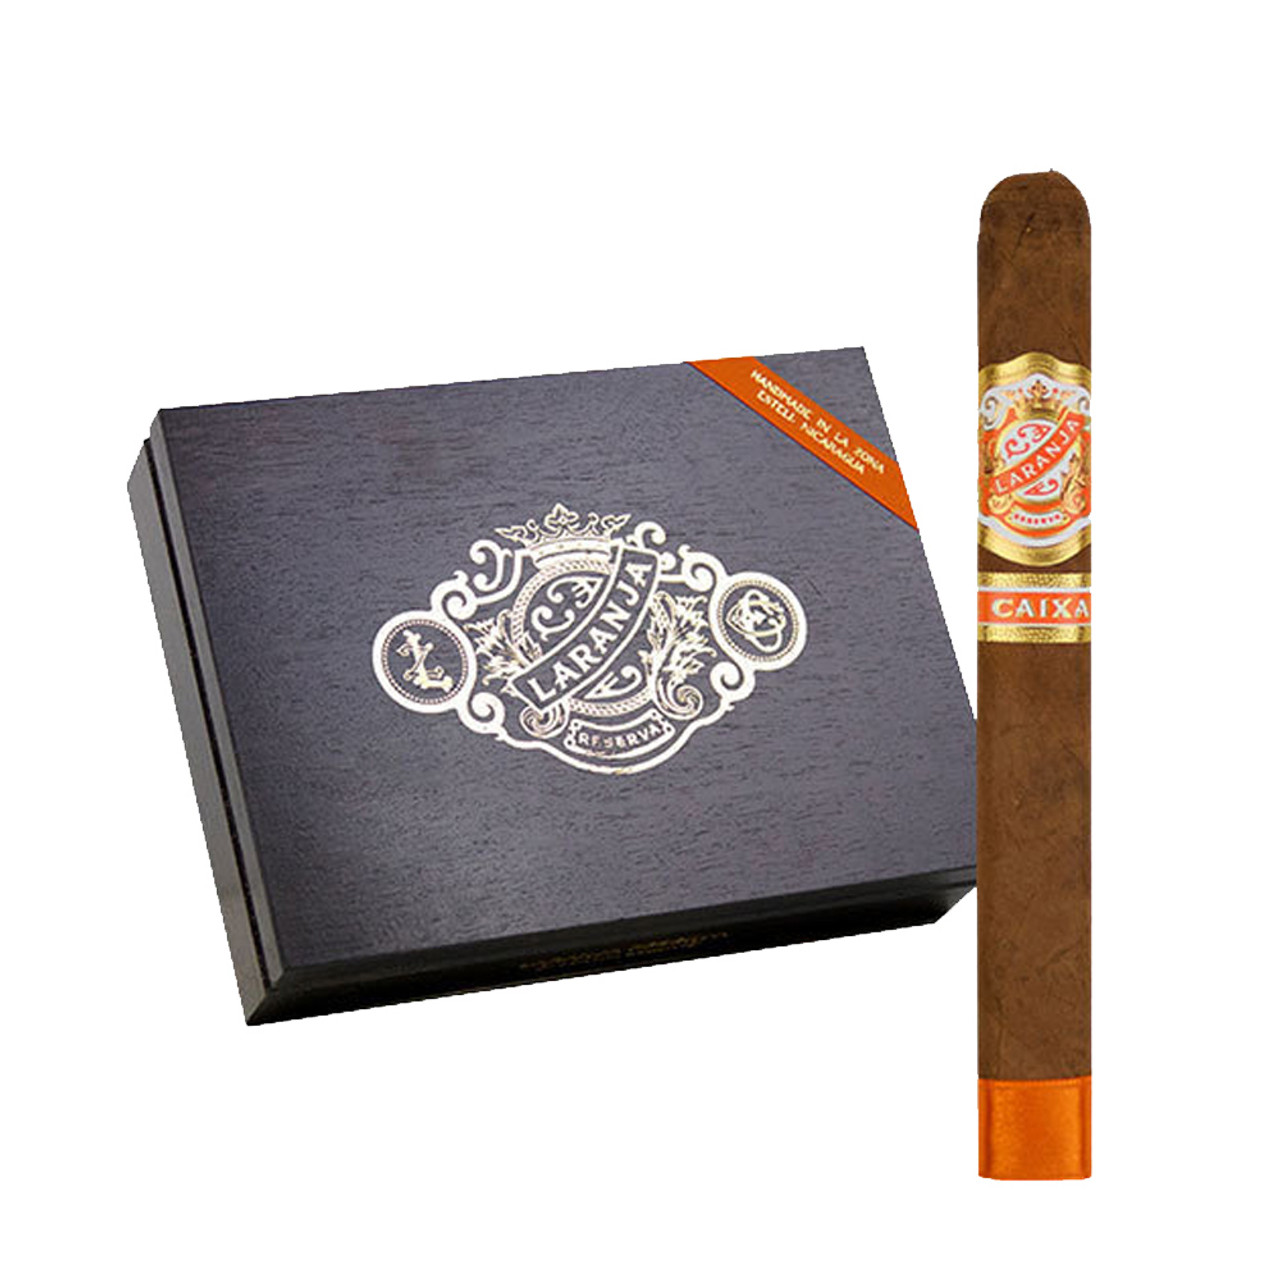 Laranja Reserva Caixa Box Pressed Cigars - Natural Box of 20